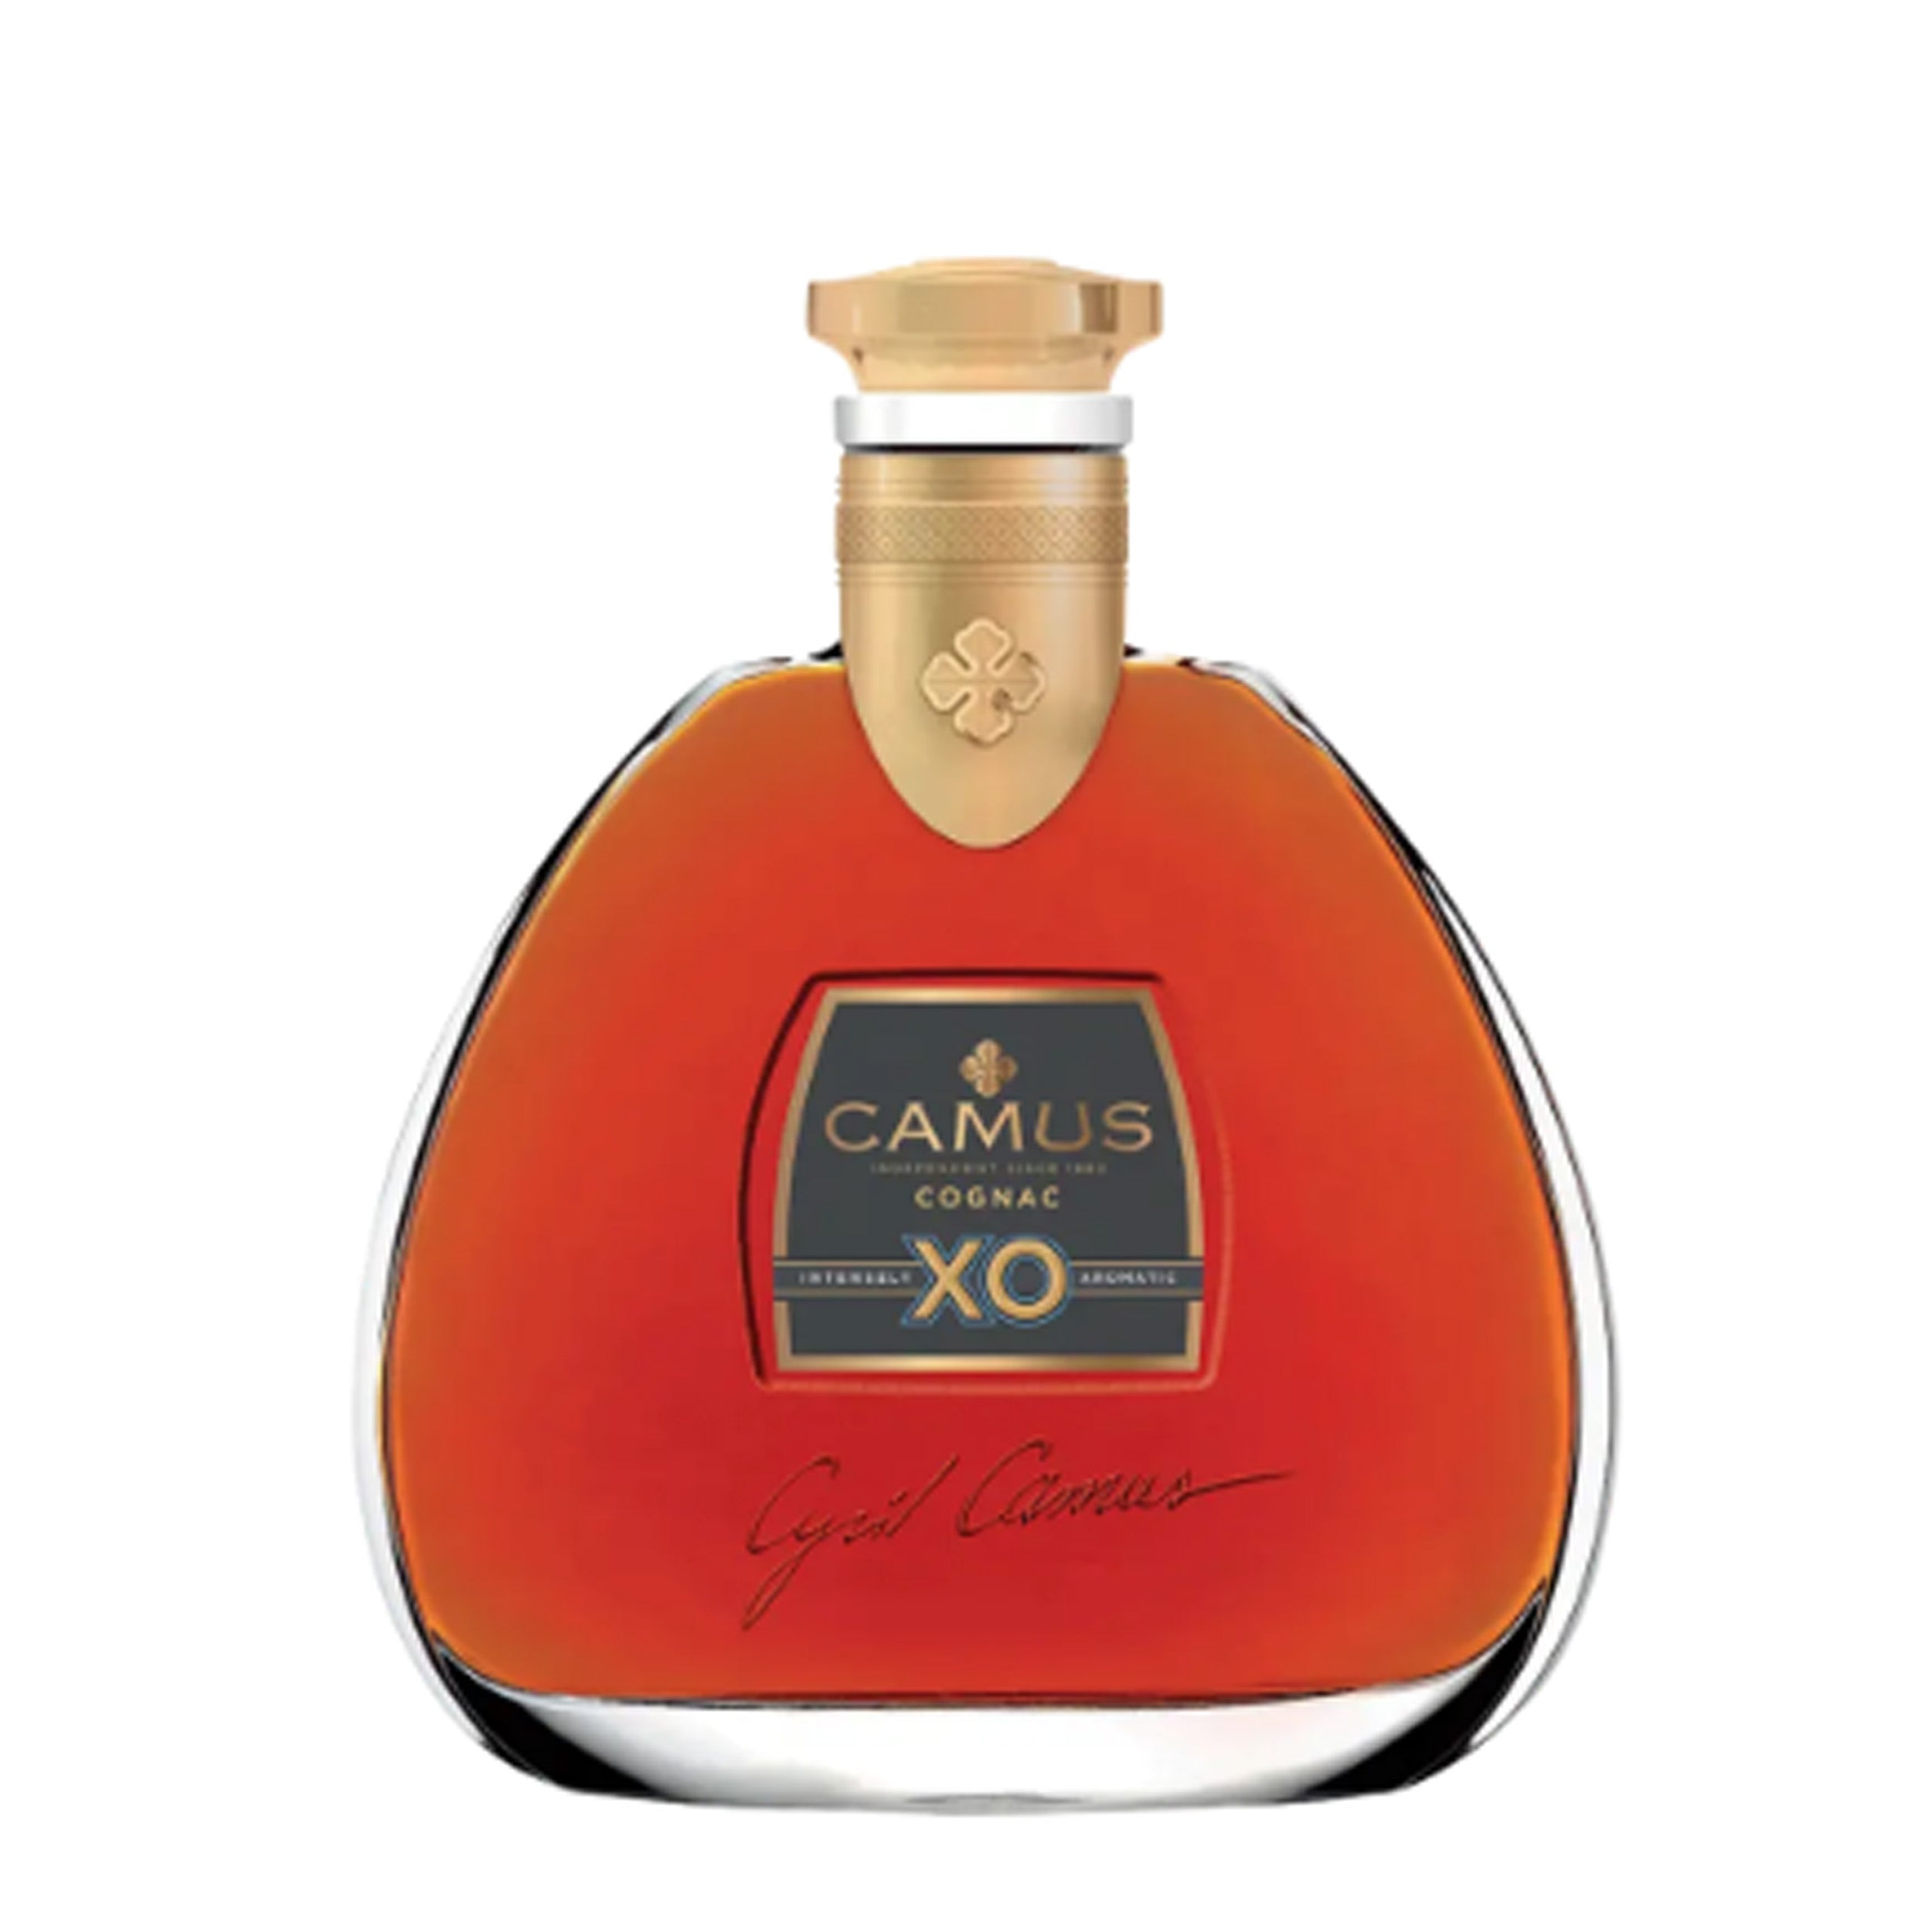 Camus Cognac XO Elegance